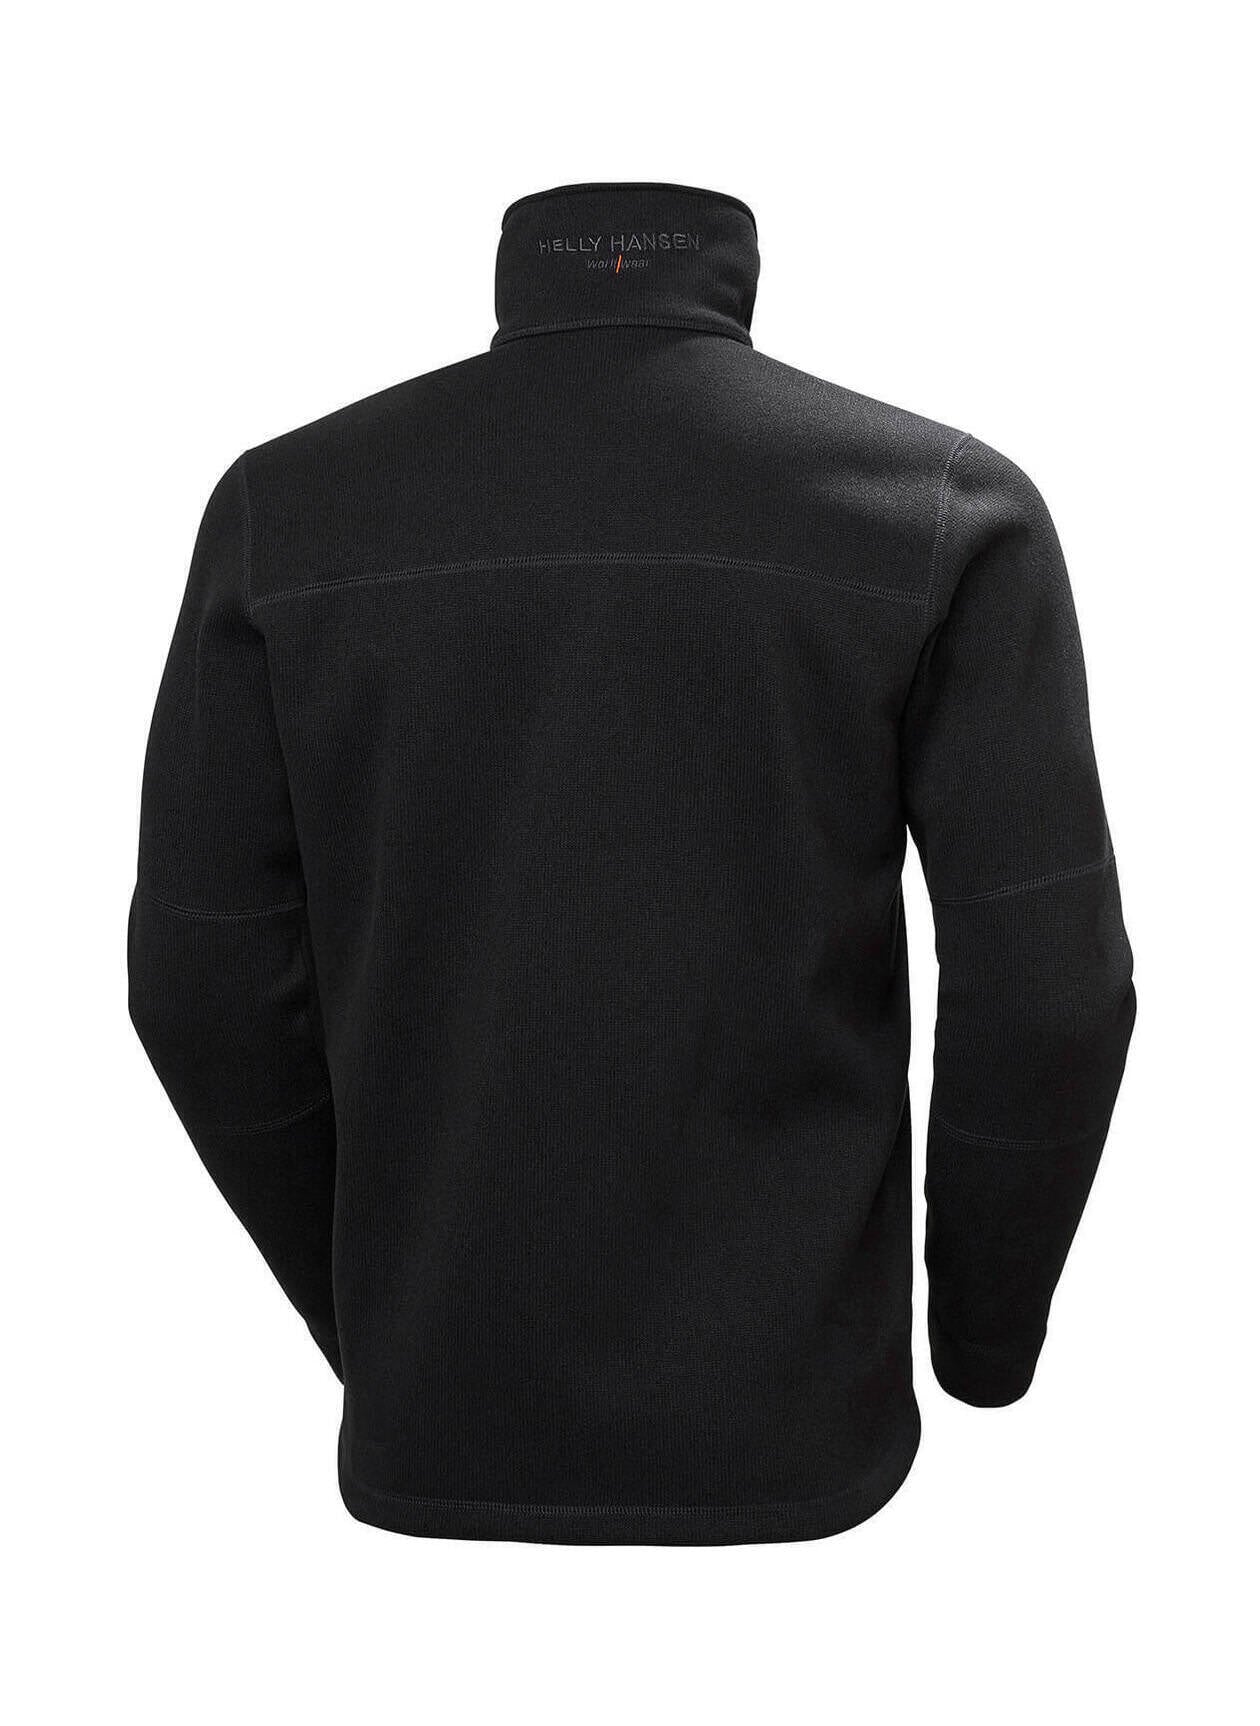 Helly Hansen Kensington Knit Fleece Custom Jackets, Black